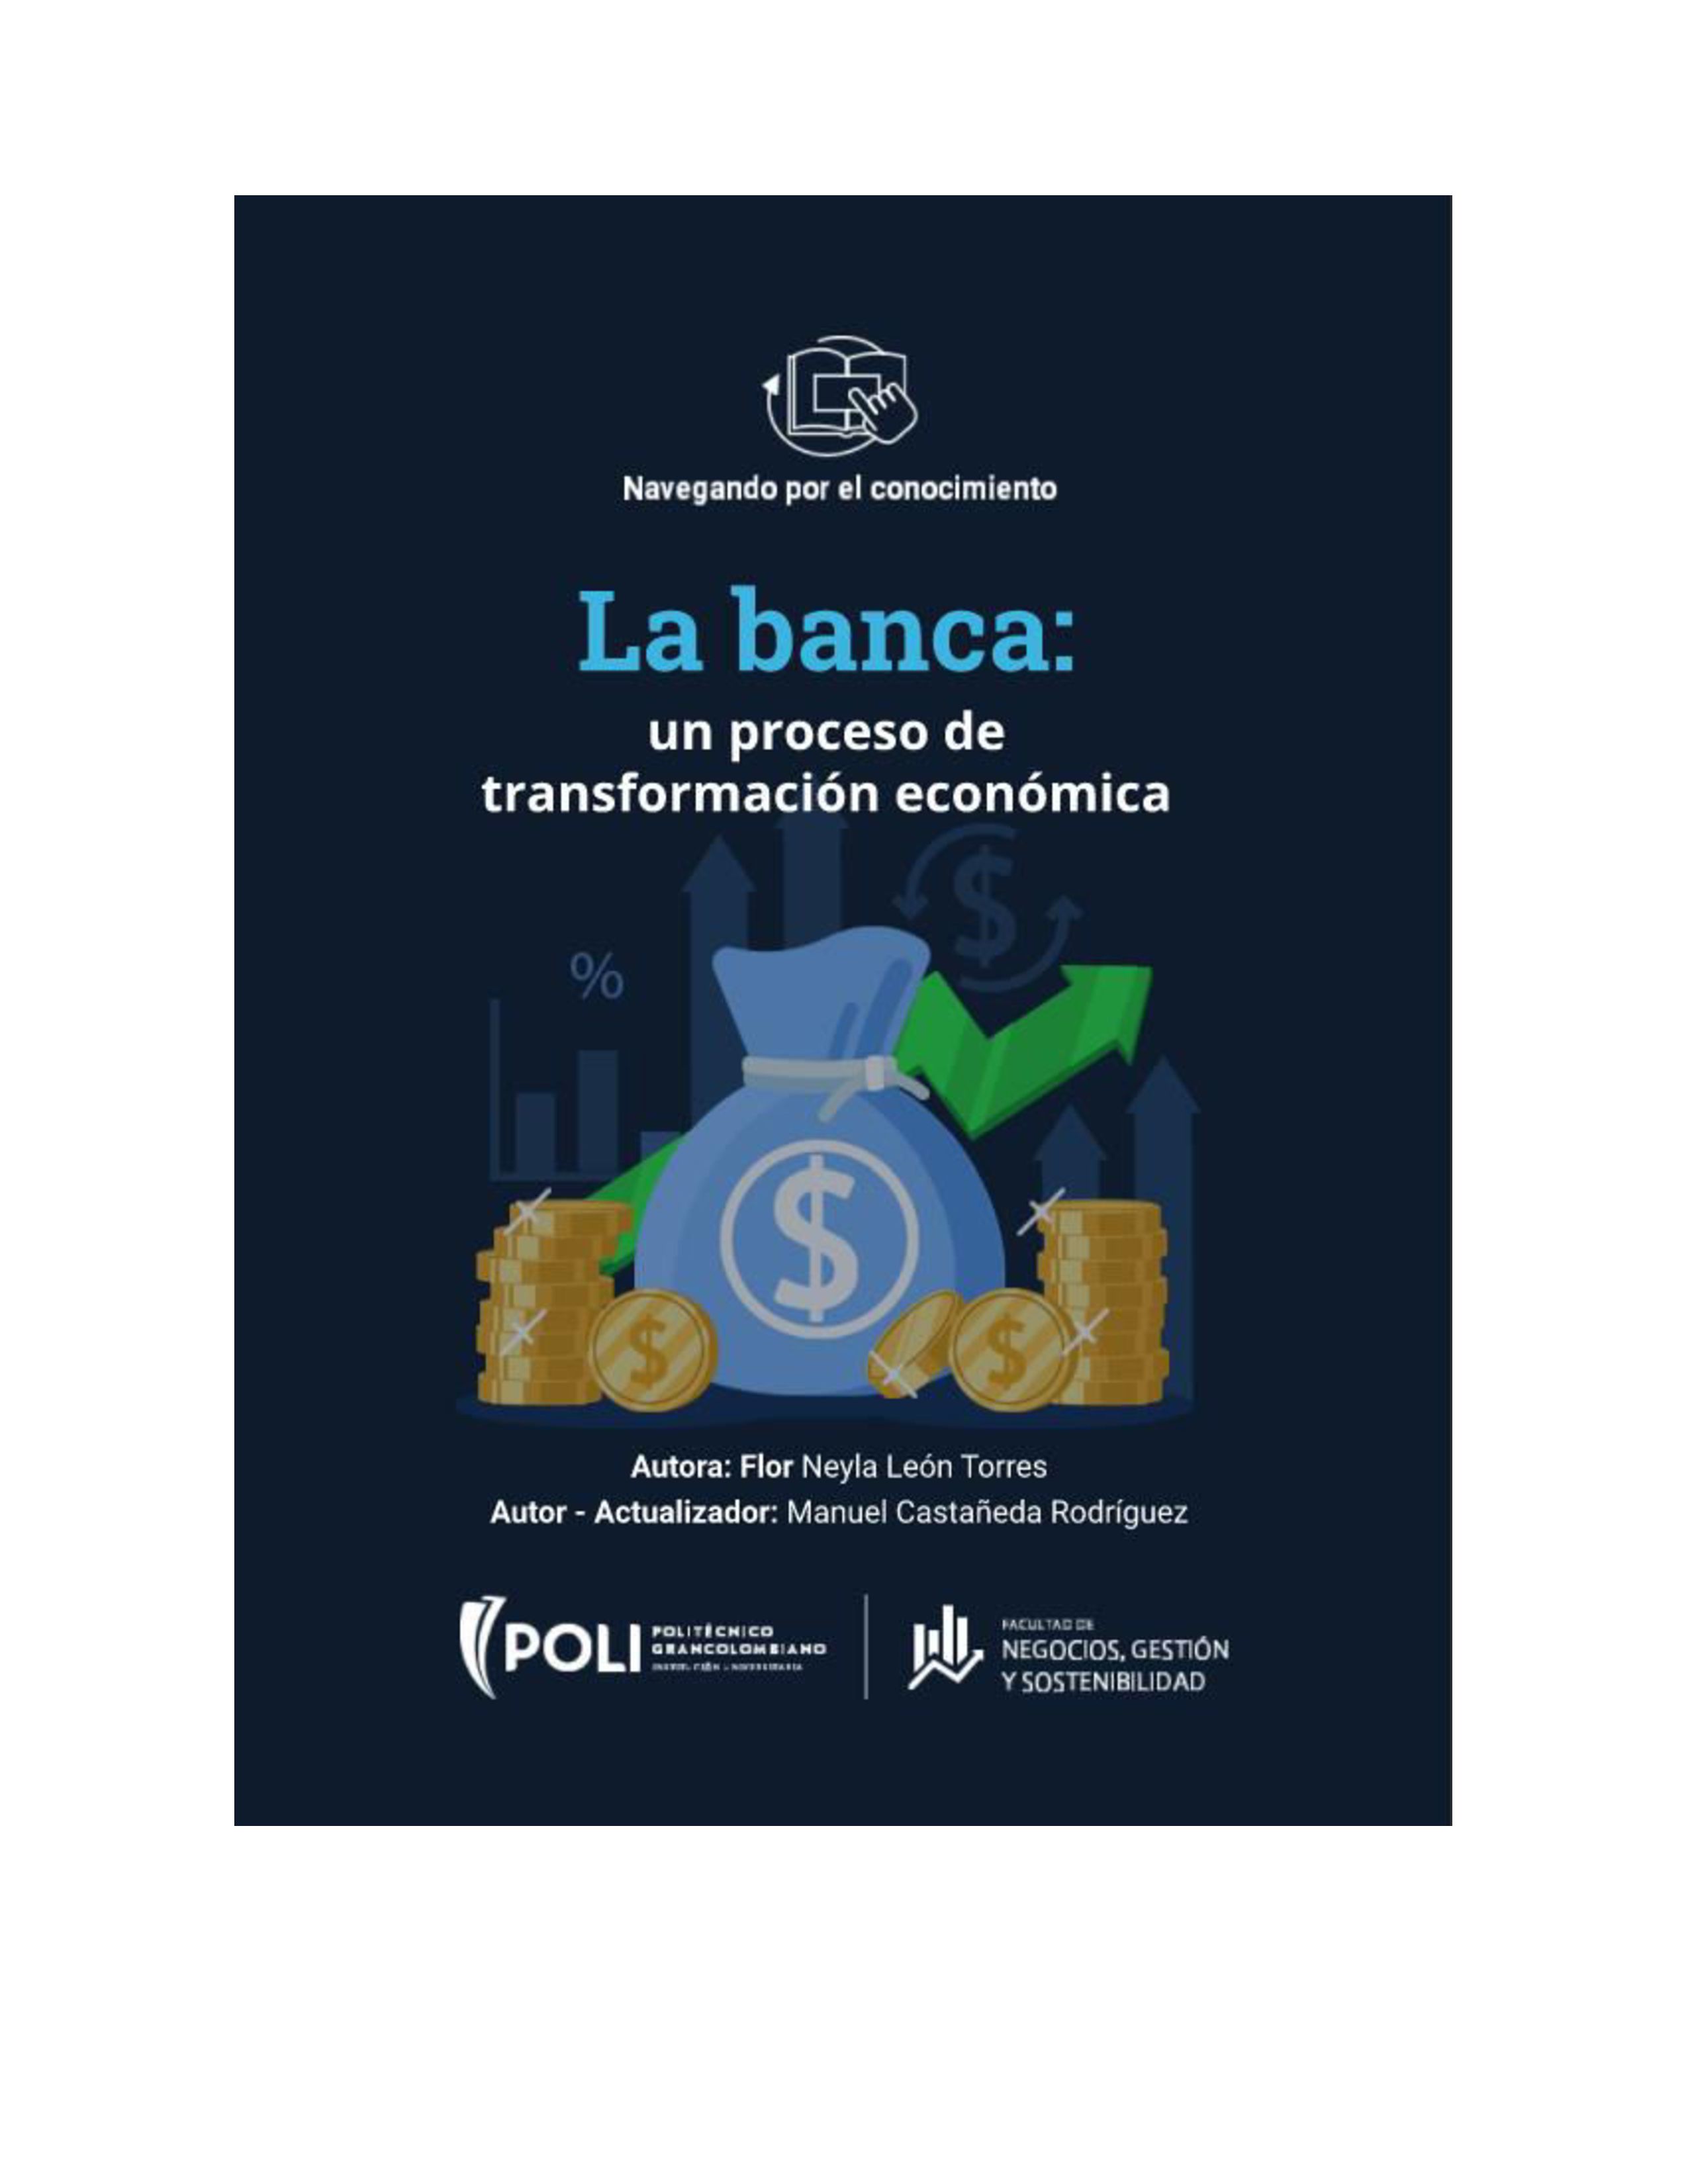 La banca, un proceso de transformación económica